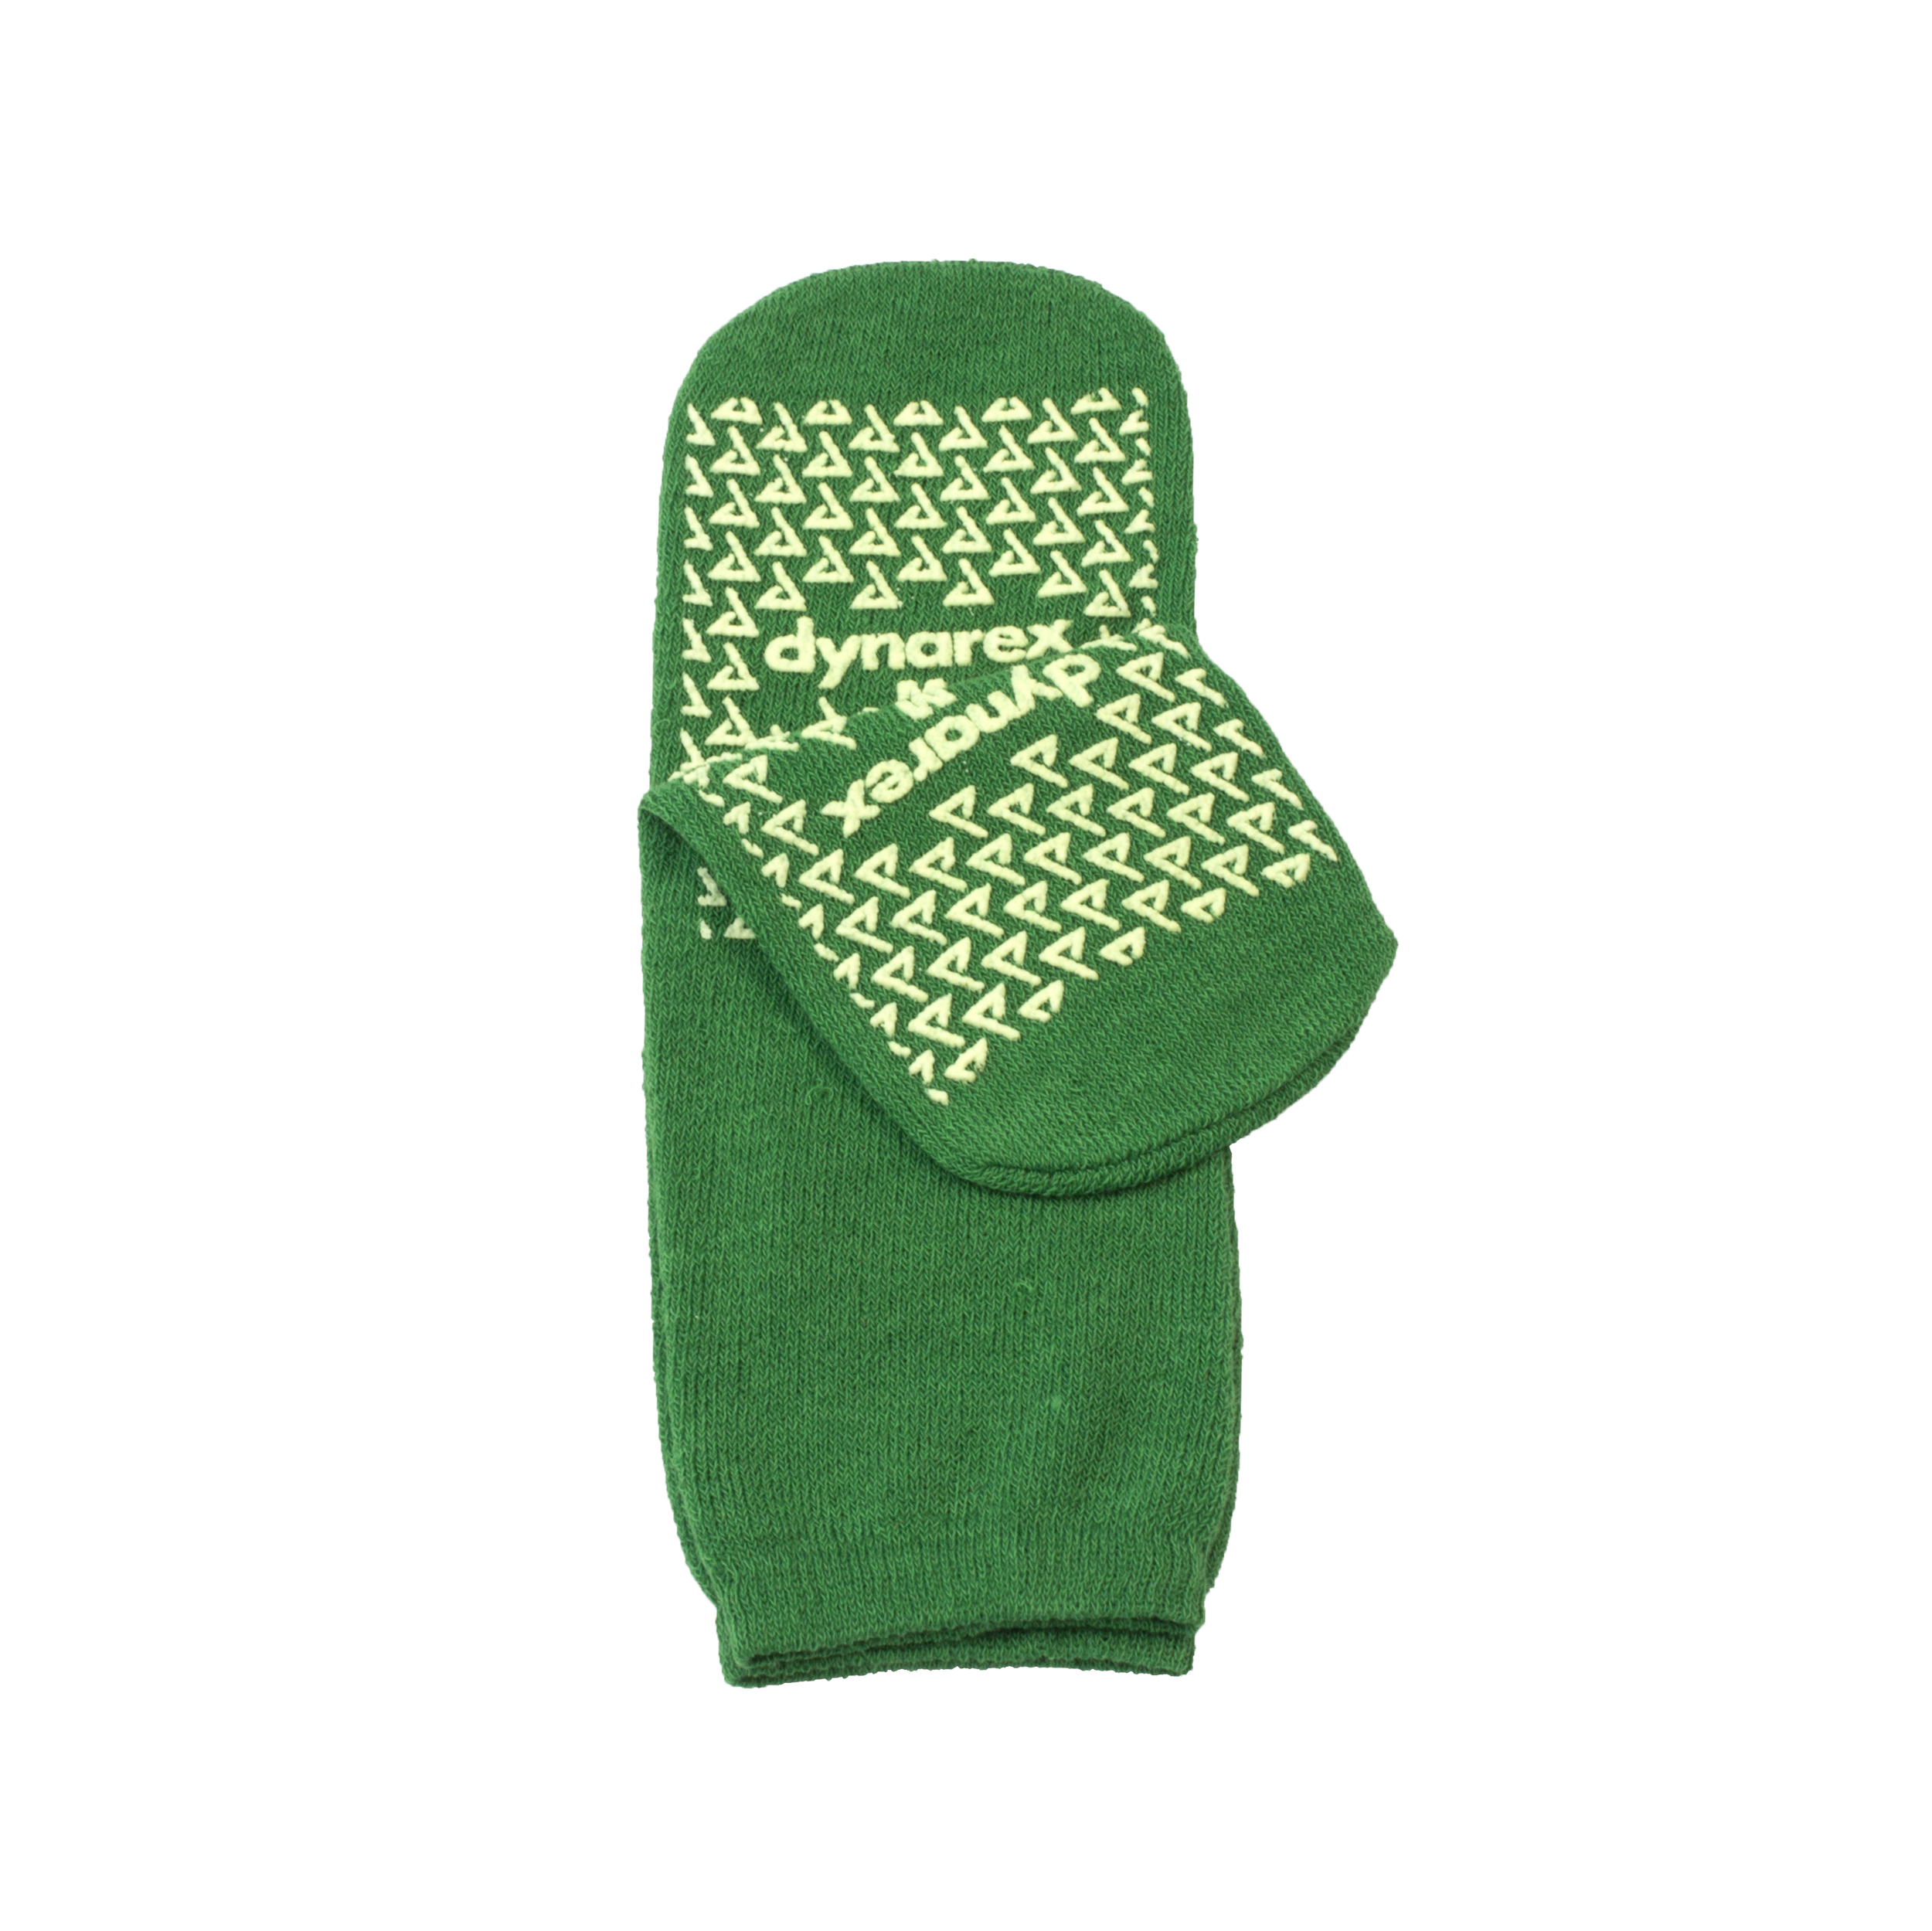 Double-Sided Slipper Socks - Med., Green